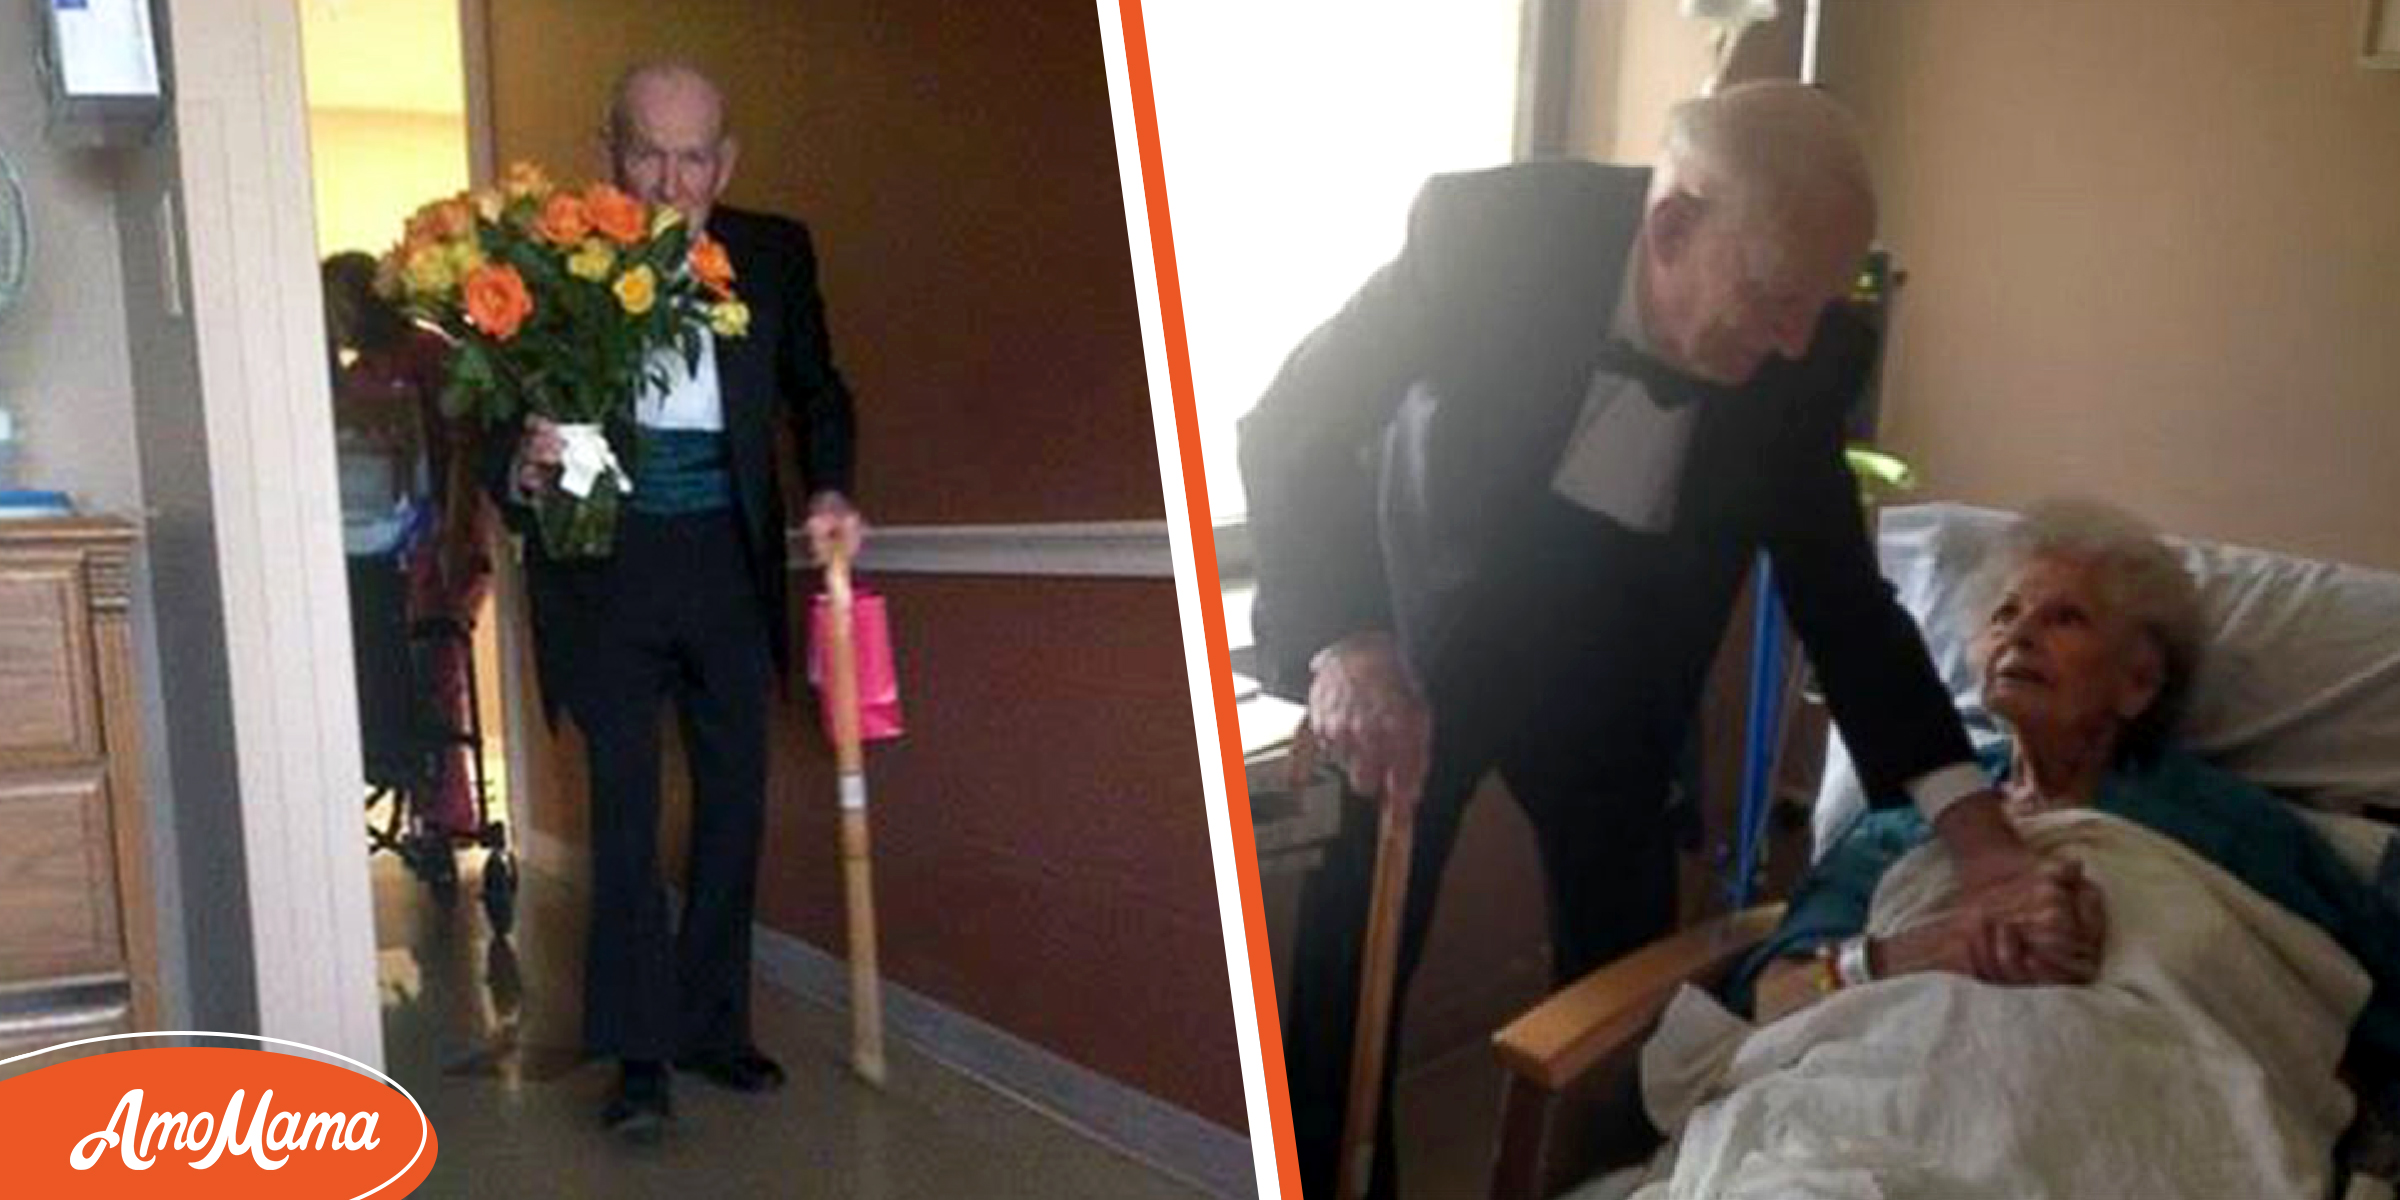 Un ancien combattant de la Seconde Guerre mondiale fait une surprise à sa femme hospitalisée pour leur 57e anniversaire de mariage